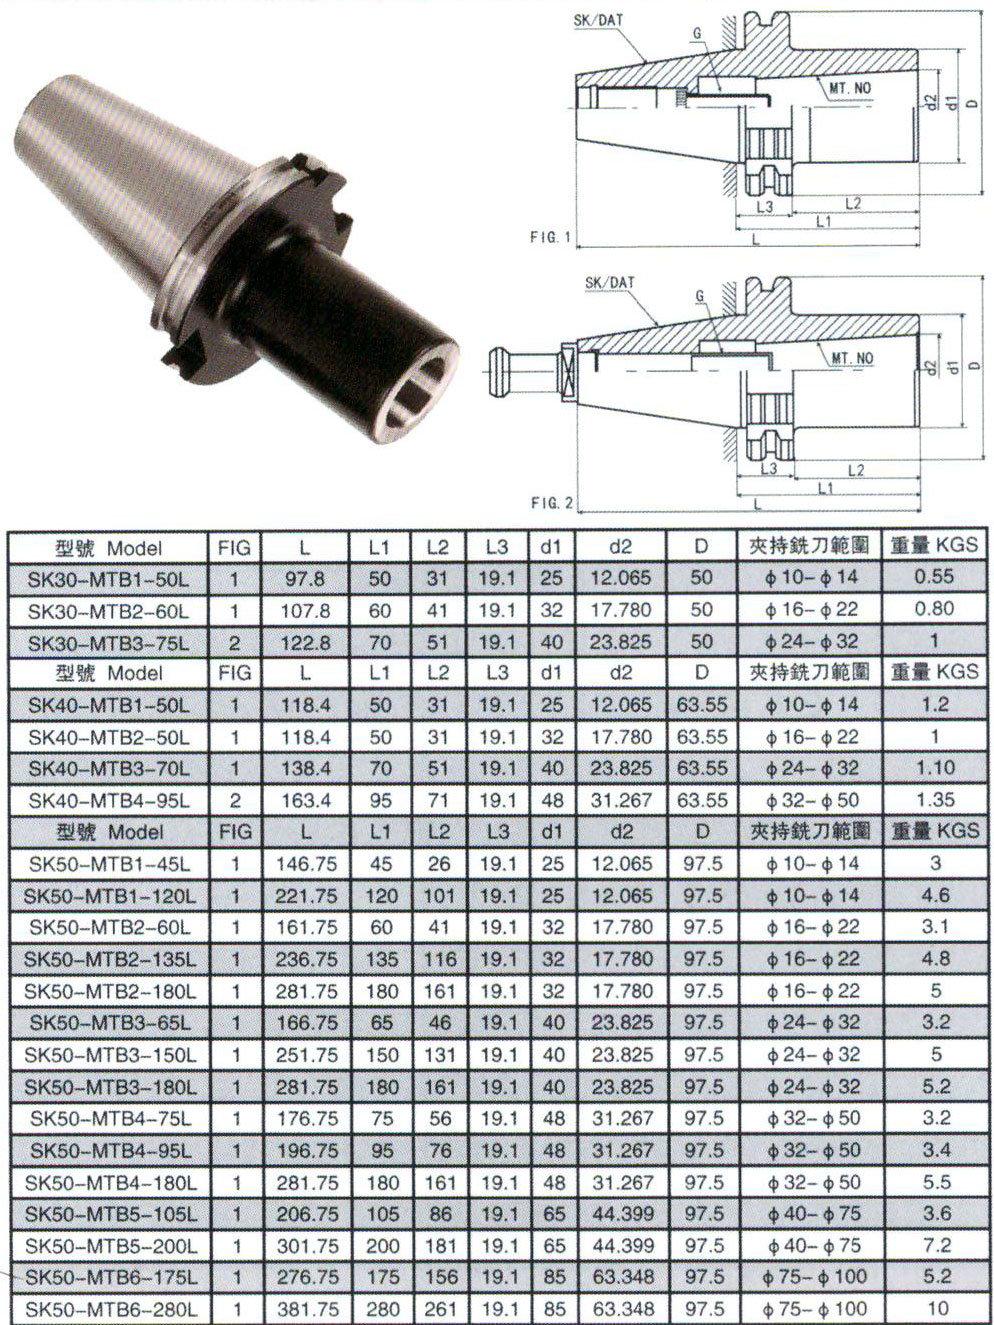 Bt/DIN2080/Jt/Sk/Dat/Cat Tool Holder, Sk50-MTB Morse Taper Adapter